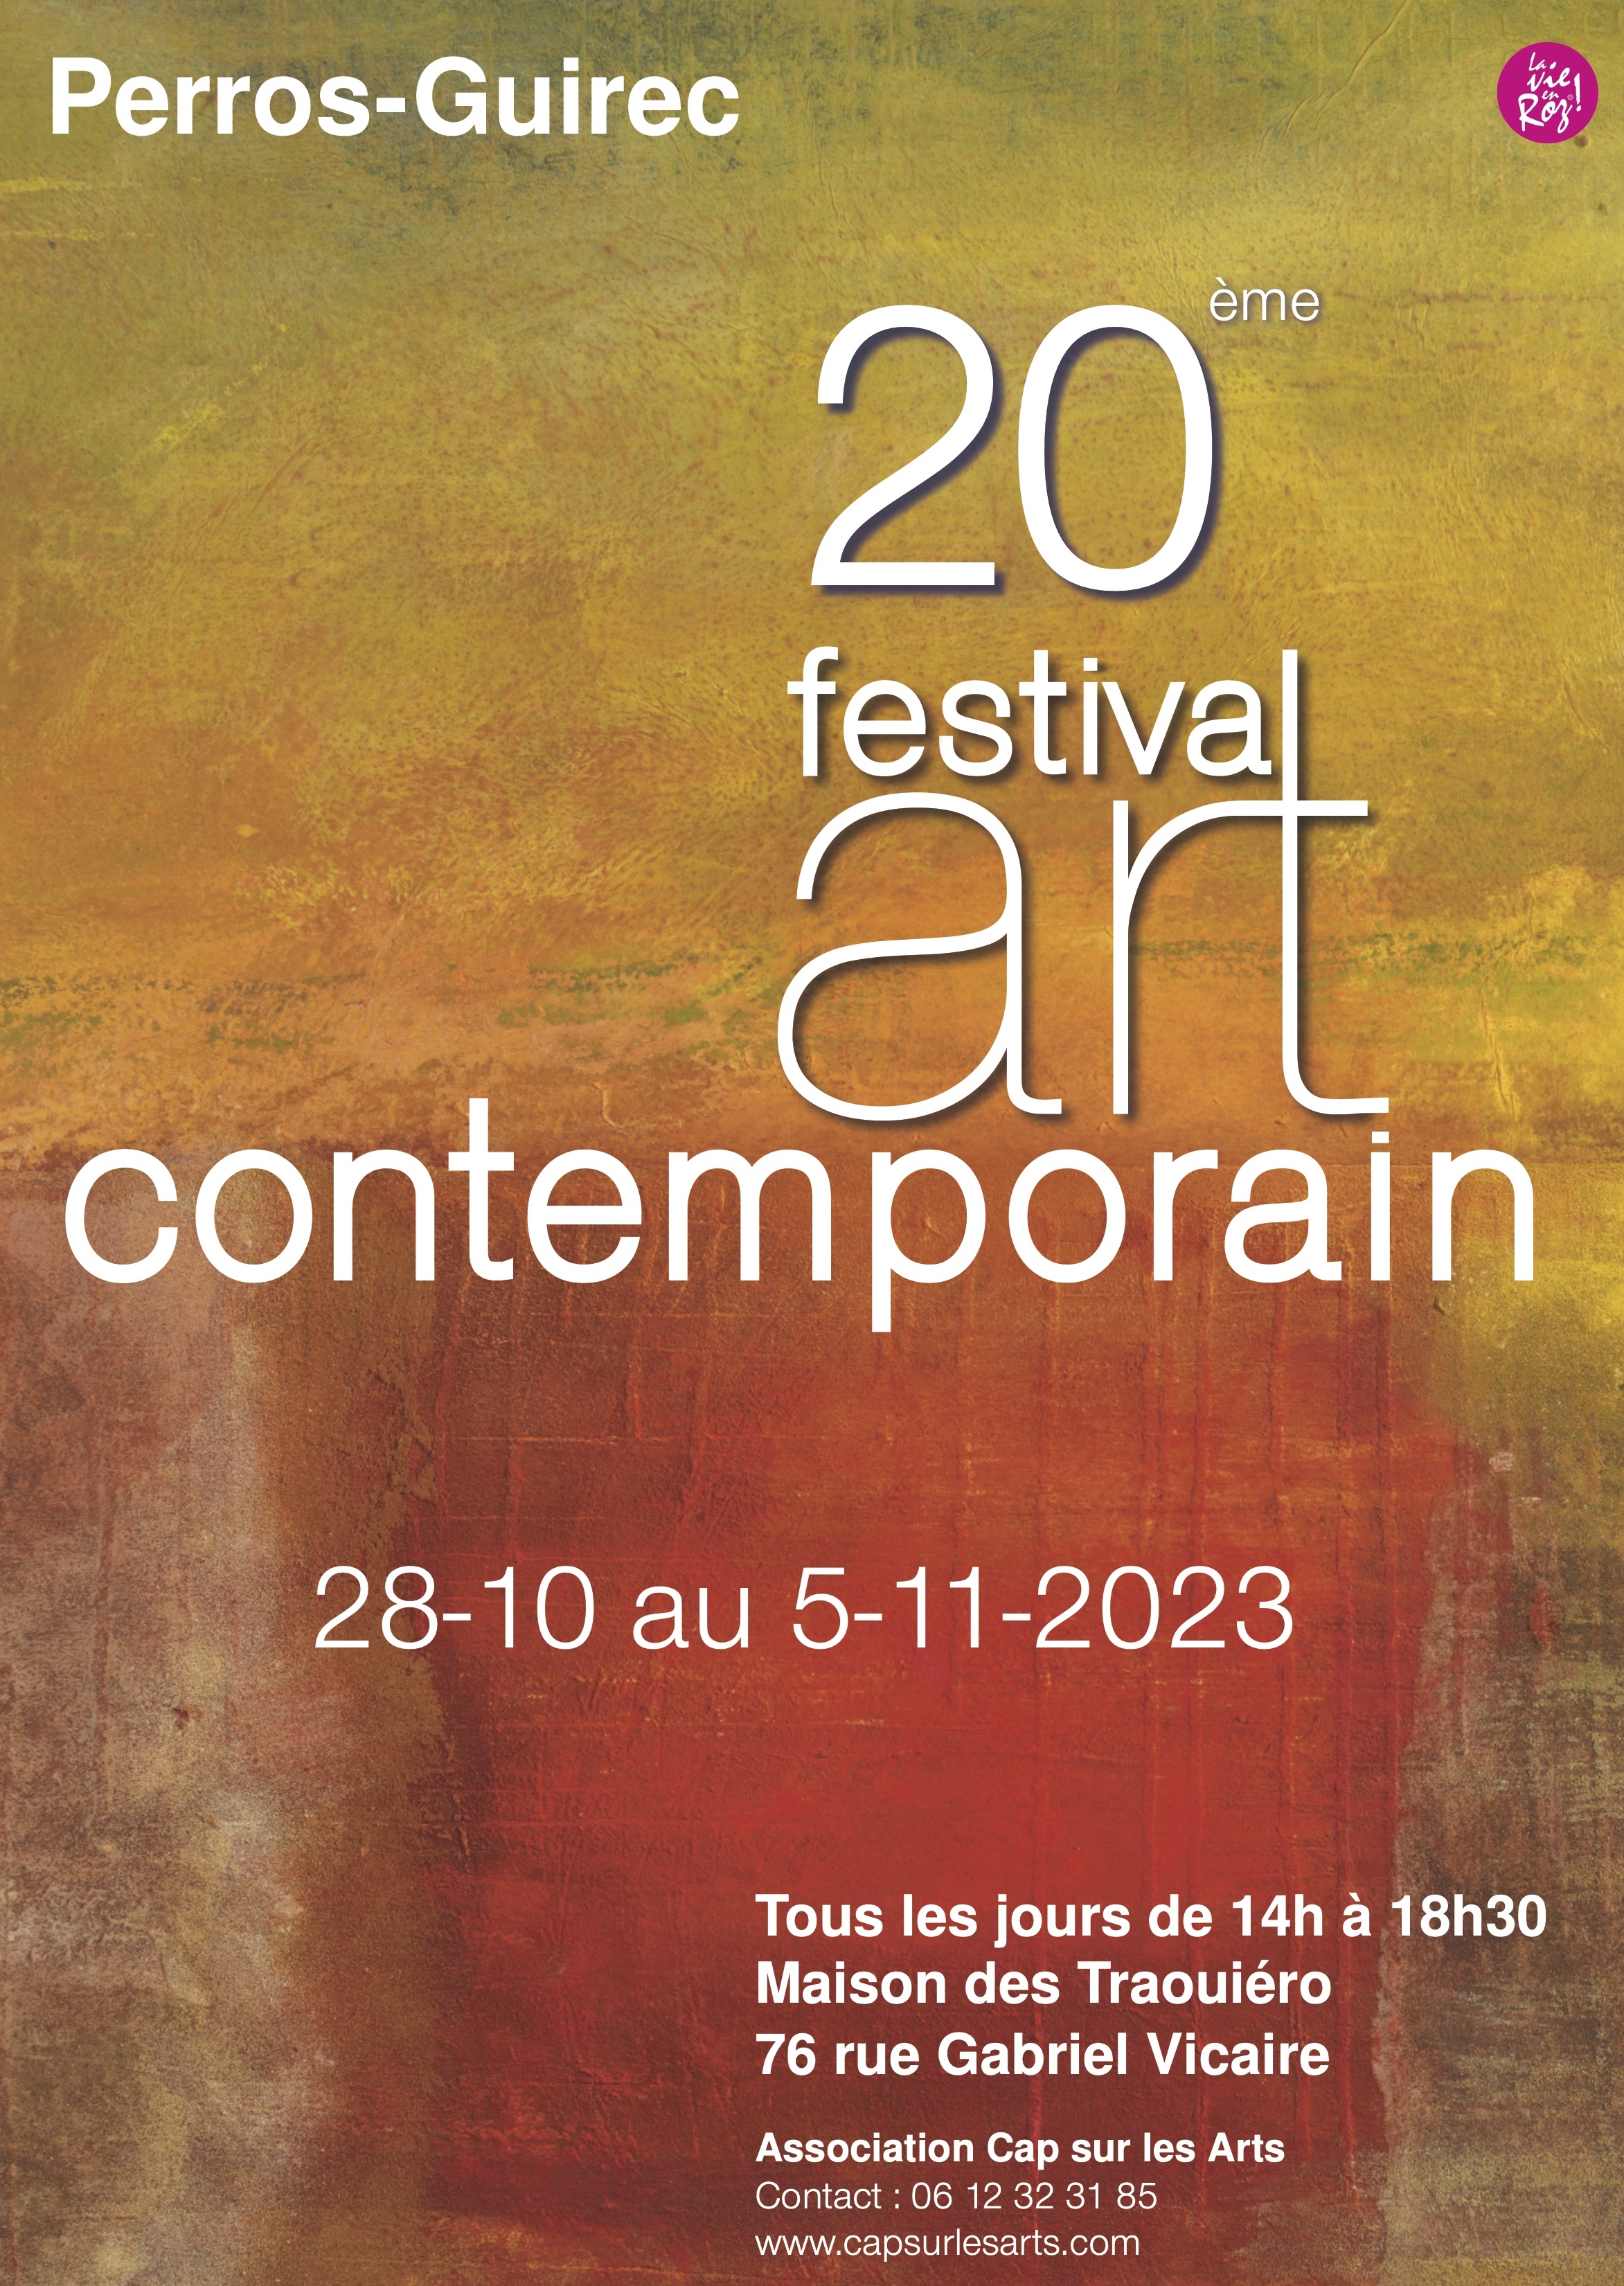 Festival d'art contemporain Perros-Guirec 2023